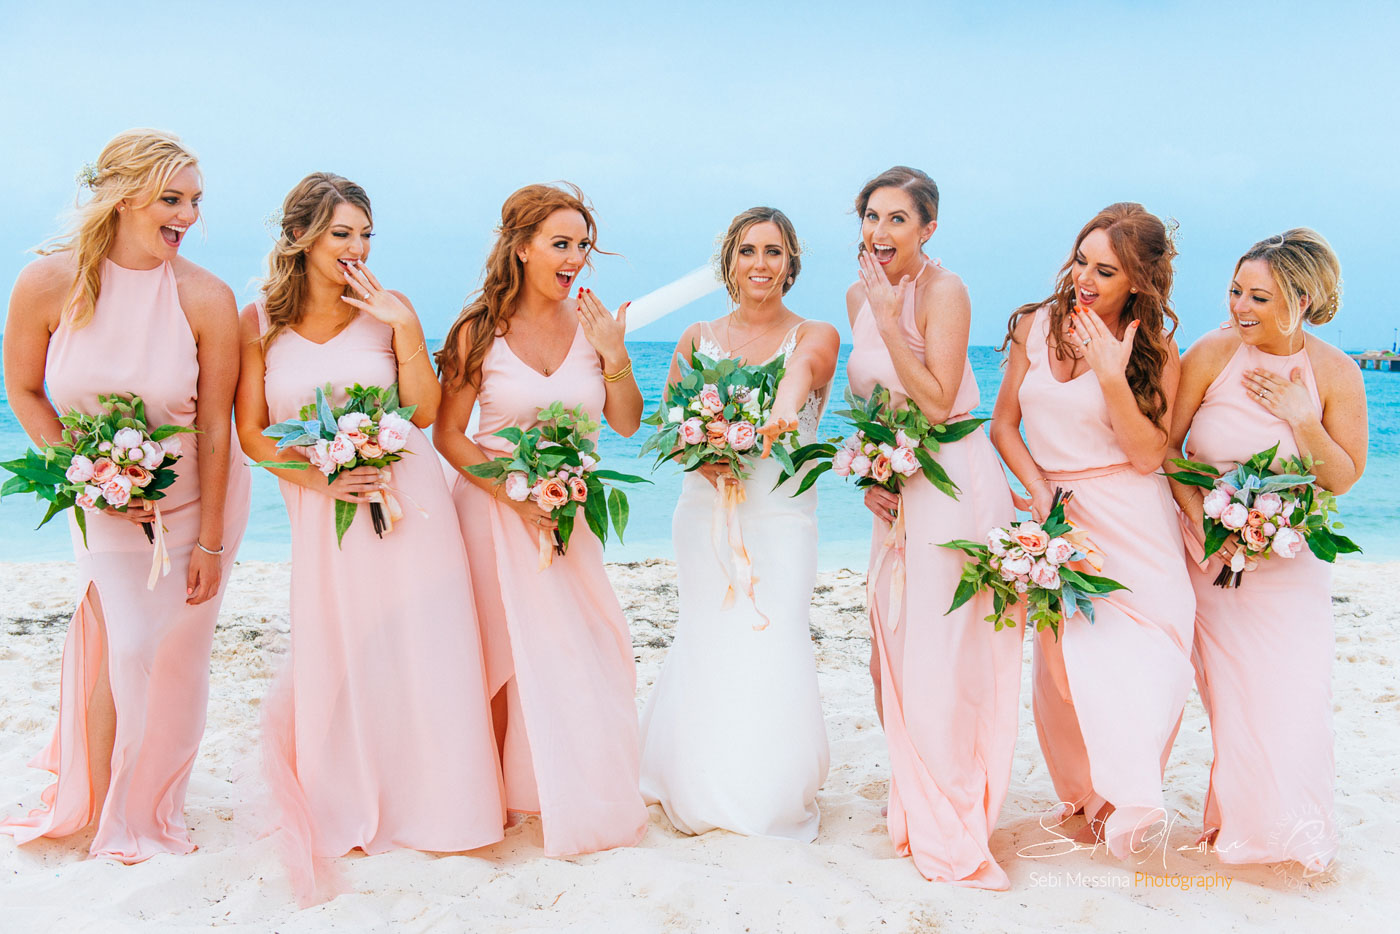 Dreams Playa Mujeres Wedding – Amanda and Sean – Sebi Messina Photography